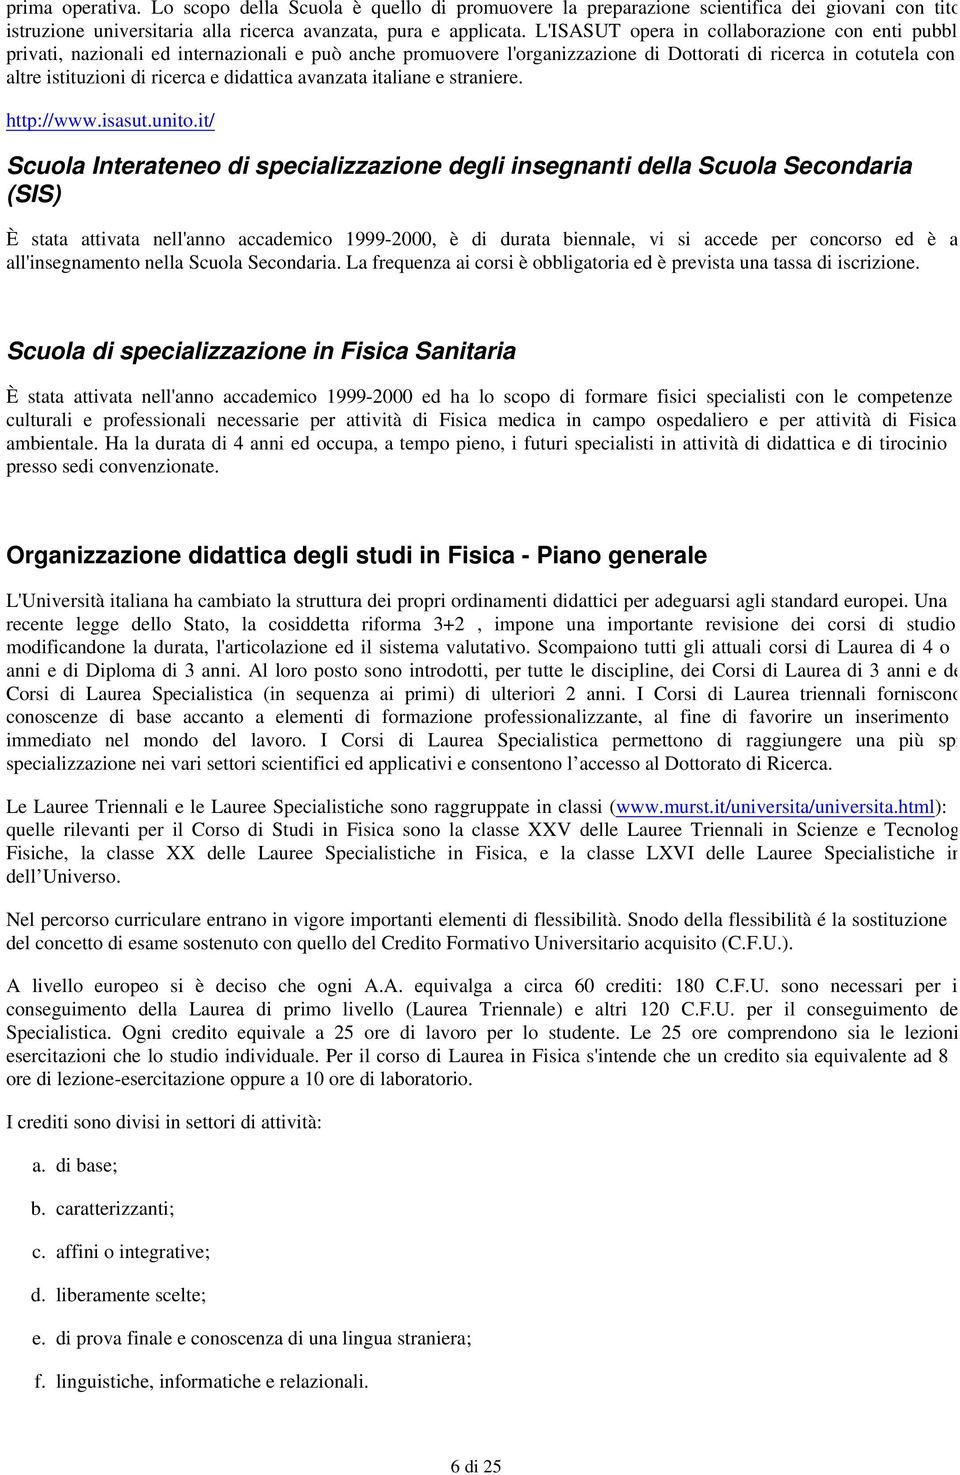 didattica avanzata italiane e straniere. http://www.isasut.unito.